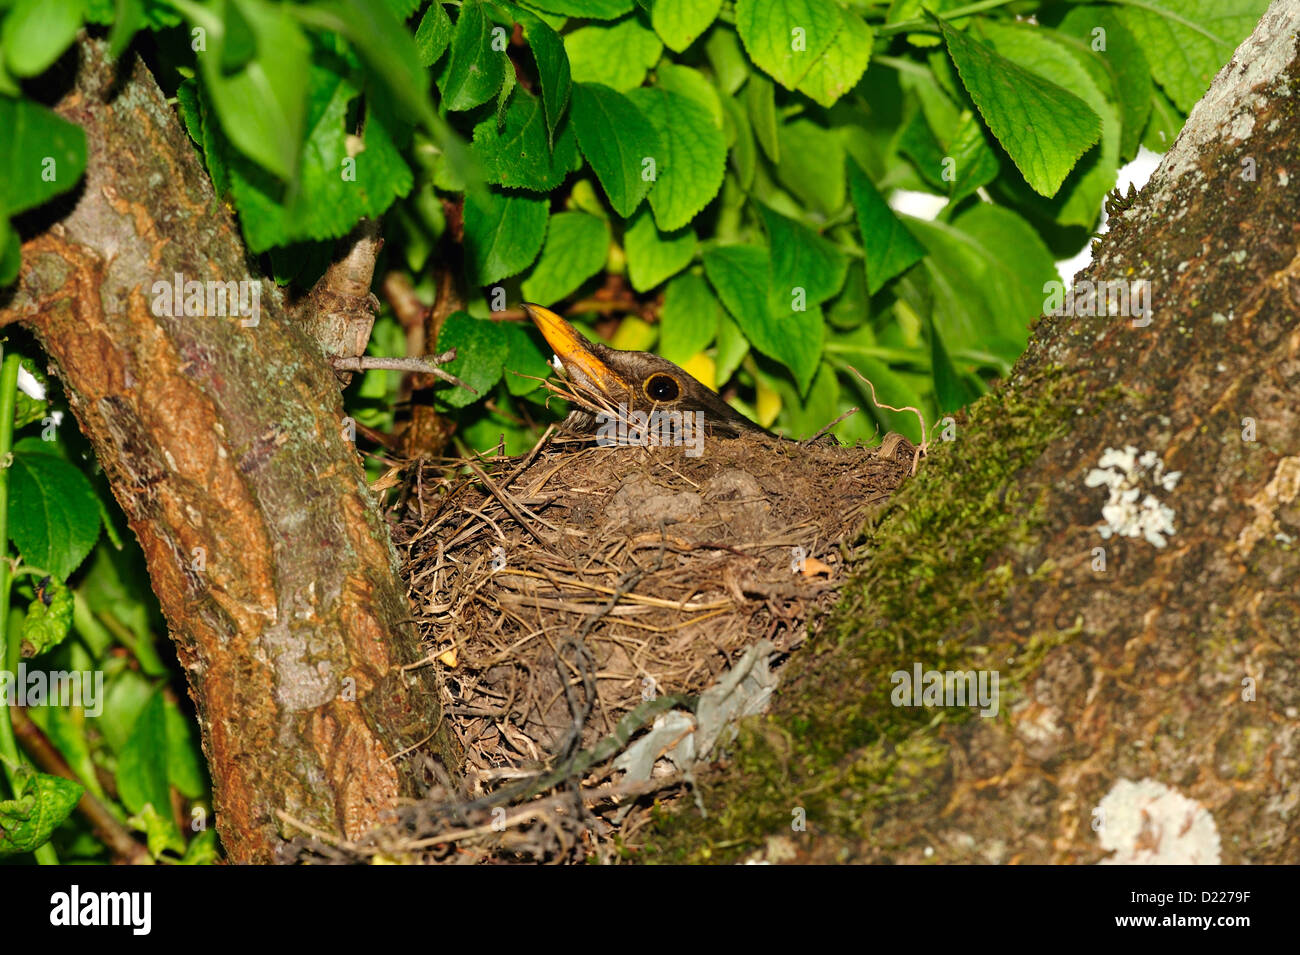 Amselweibchen (Turdus merula) femelle Blackbird • Landkreis Schwaebisch Hall, Bade-Wurtemberg, Allemagne Banque D'Images